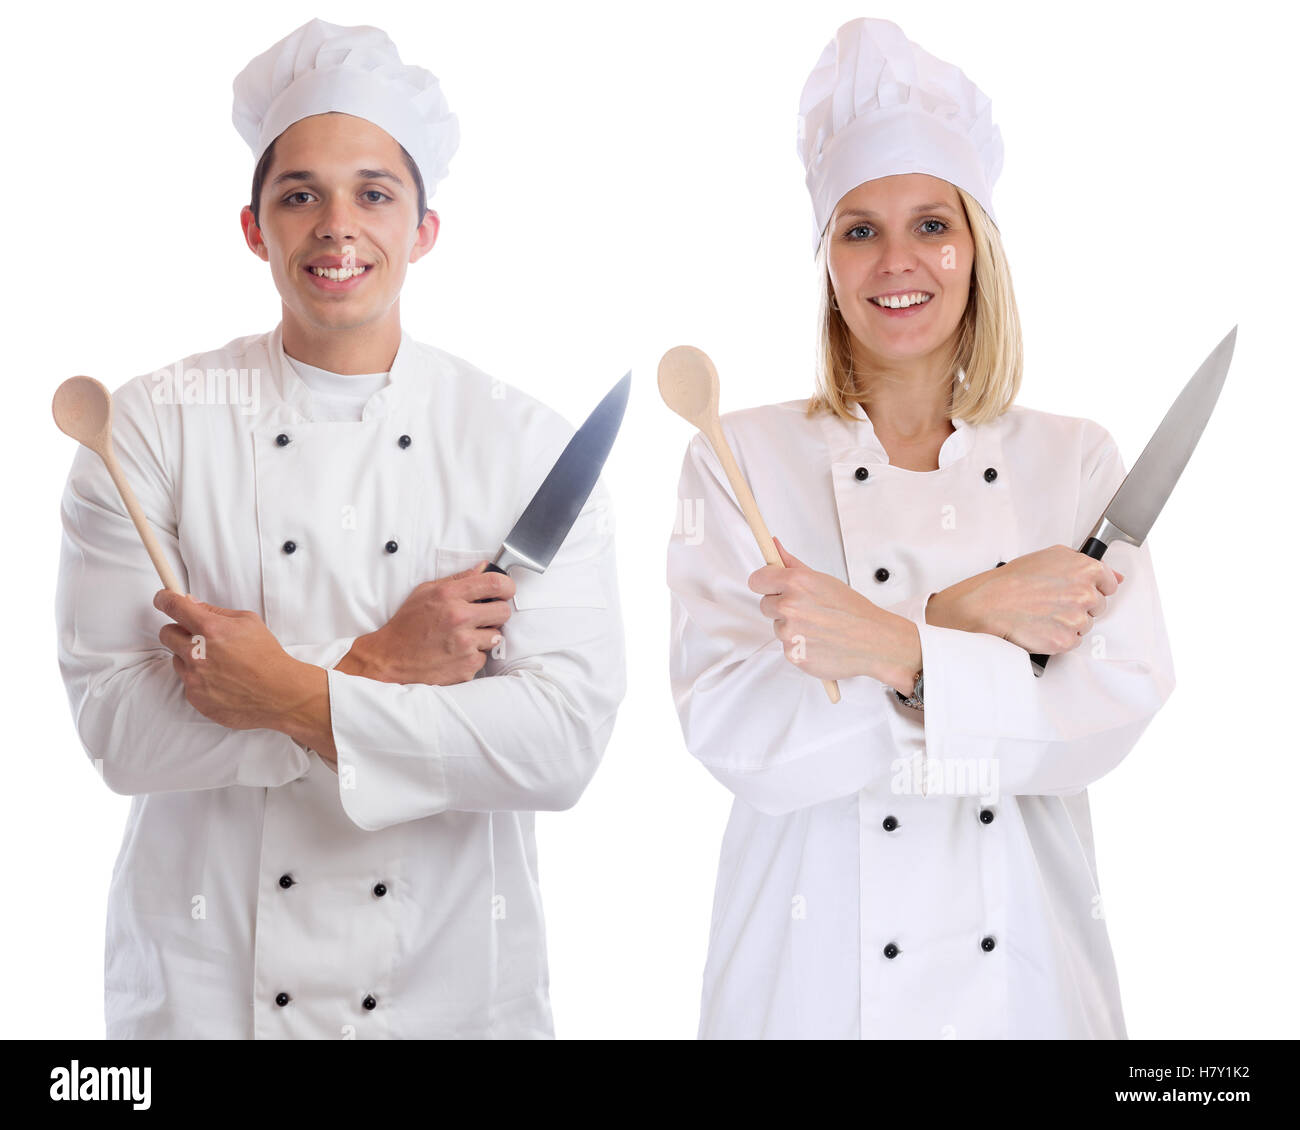 Apprendista cuoco partecipante tirocinanti cuochi in cucina con coltello giovani lavoro isolato su uno sfondo bianco Foto Stock